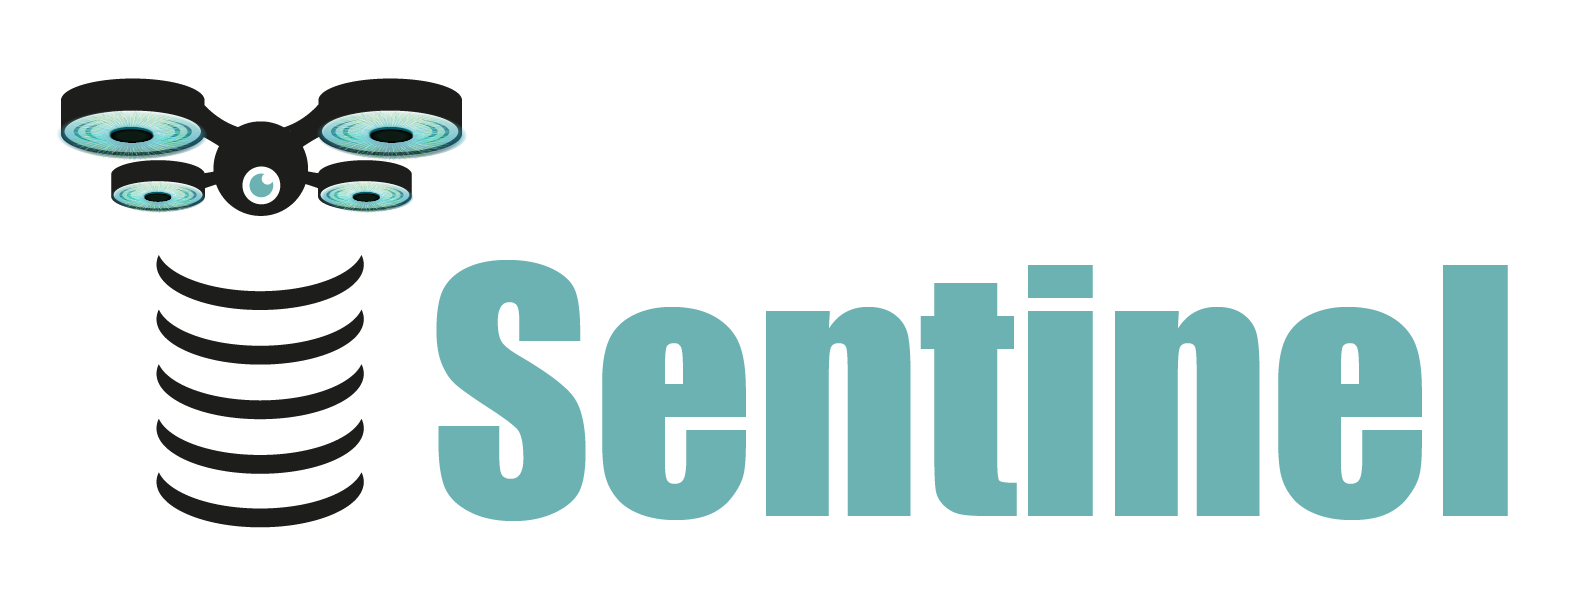 Sentinel UTM